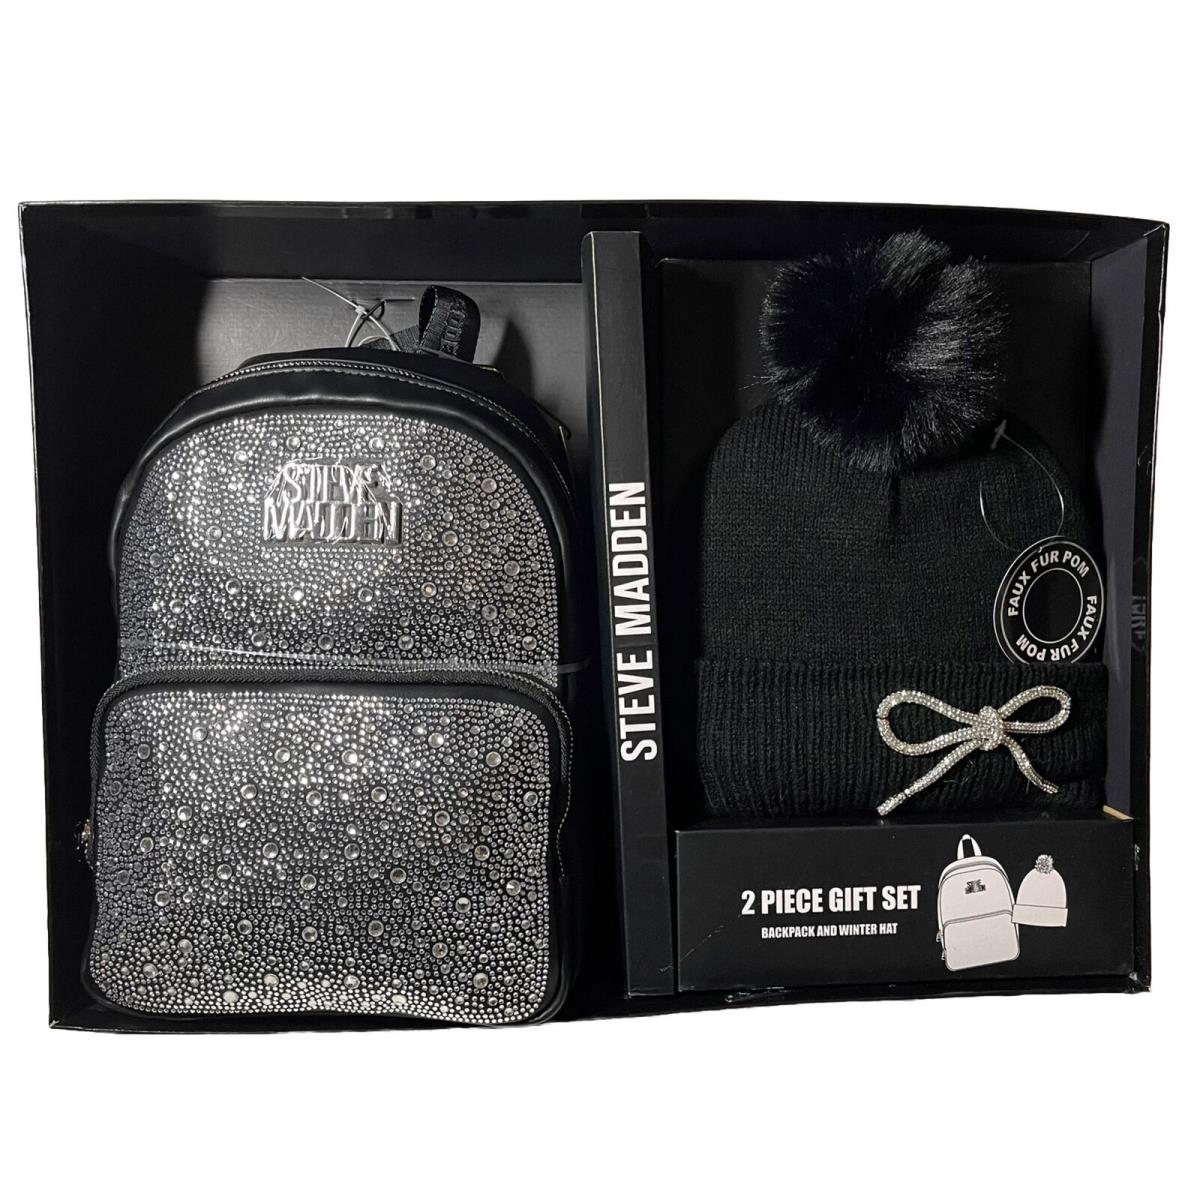 Steve Madden 2 PC Gift Set Bling Rhinestone Backpack Bag Winter Hat Black